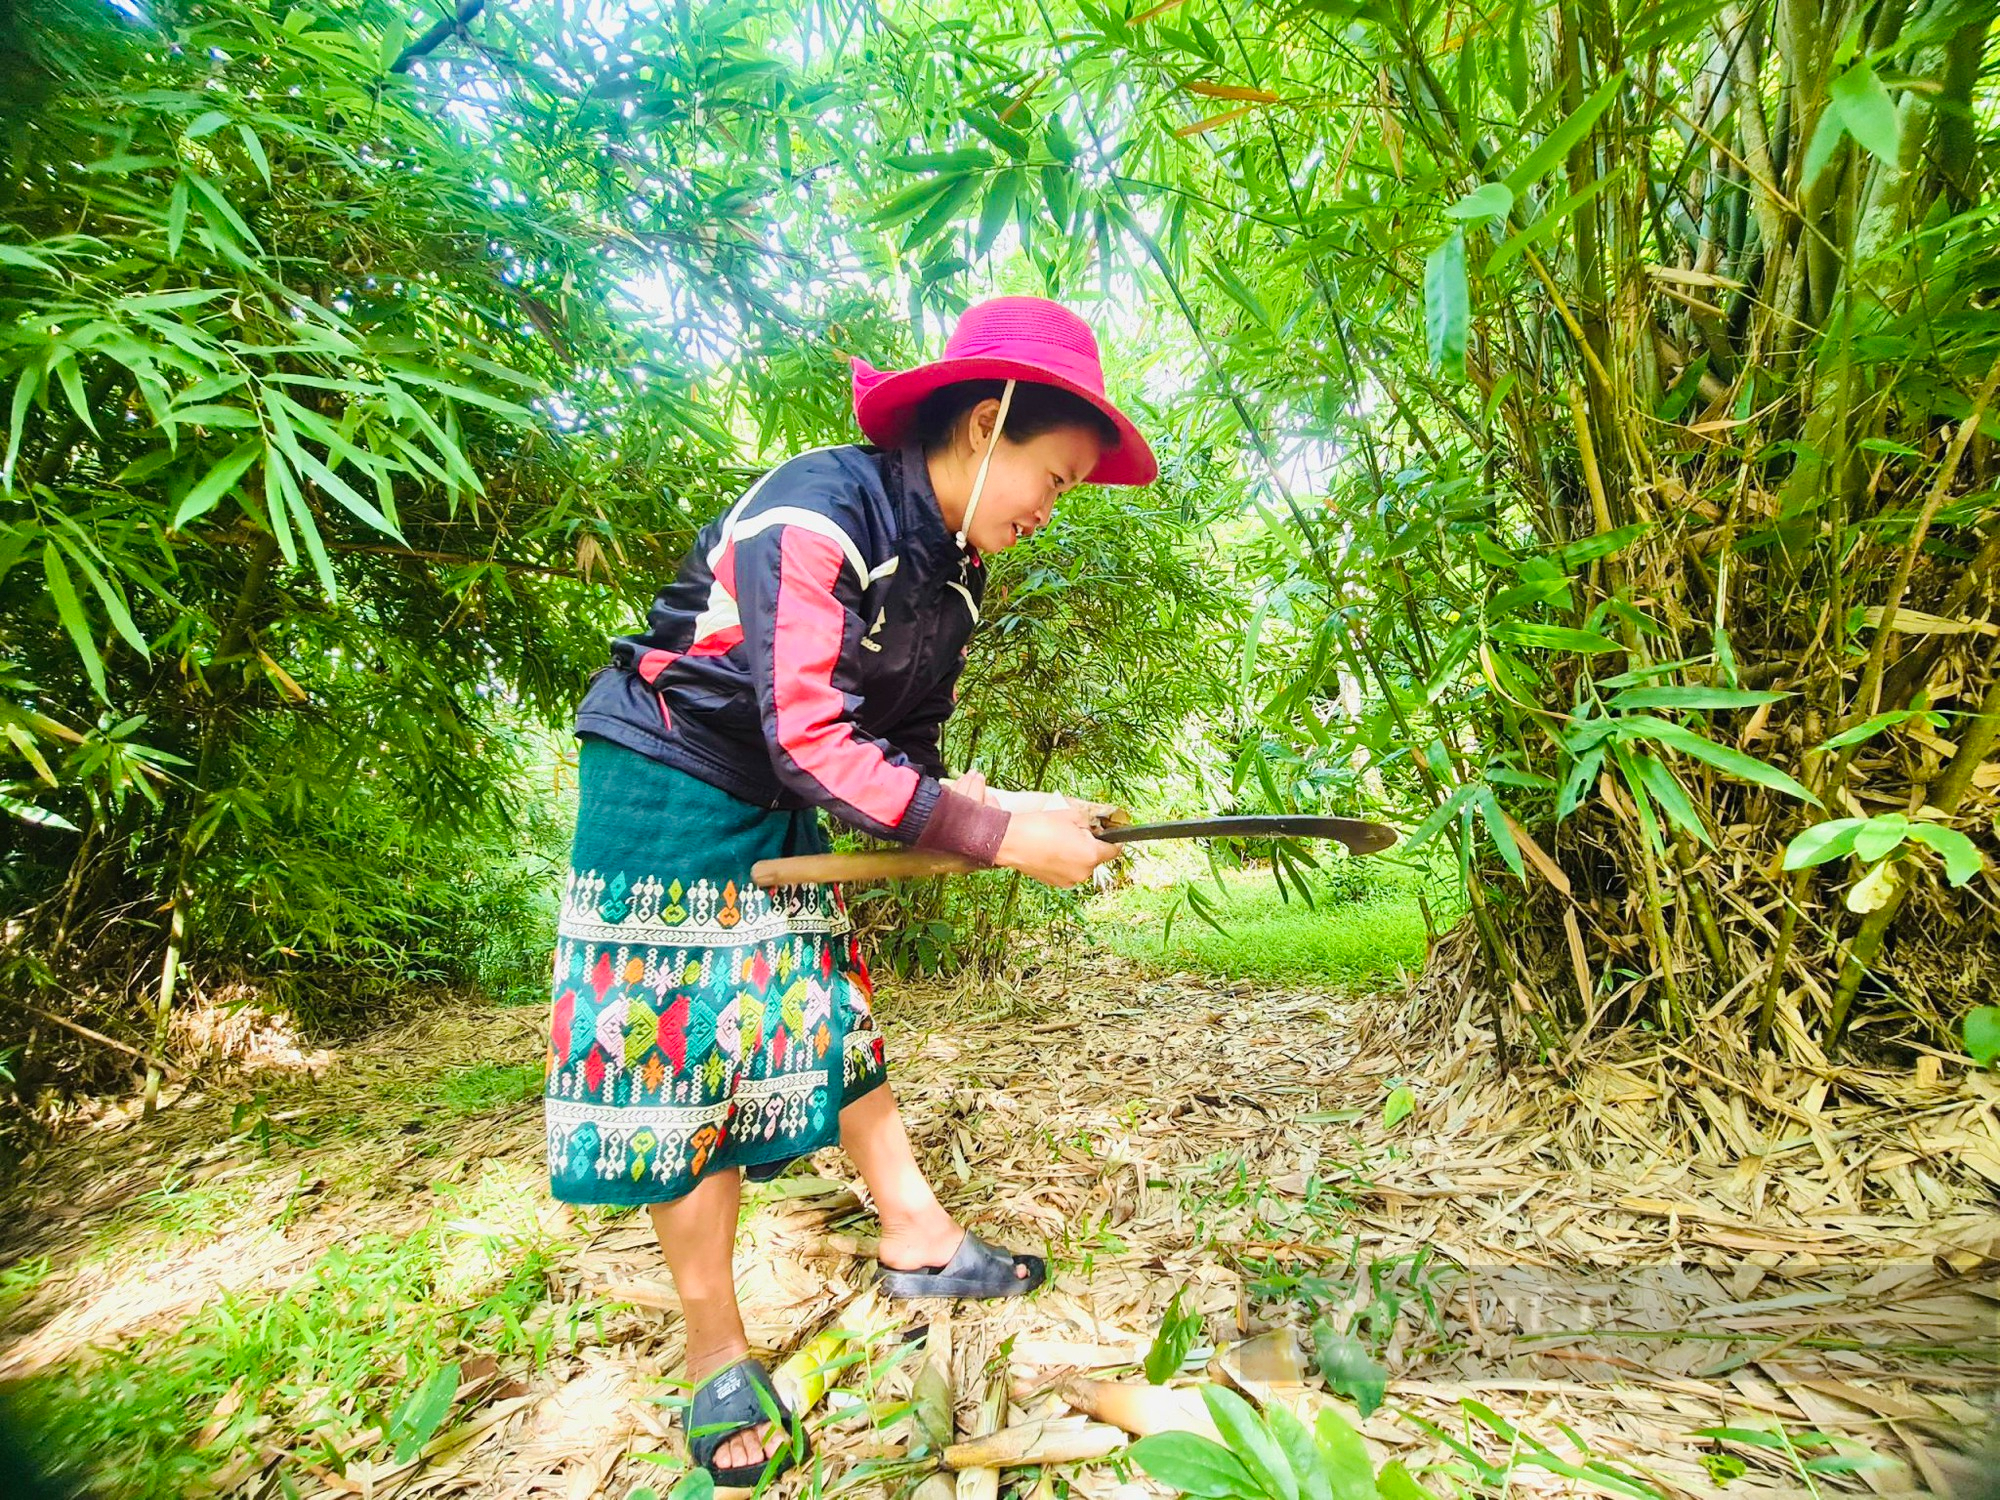 Người dân miền núi Quảng Bình vào rừng hái thứ mọc dưới đất lên làm ra sản phẩm OCOP 3 sao - Ảnh 1.